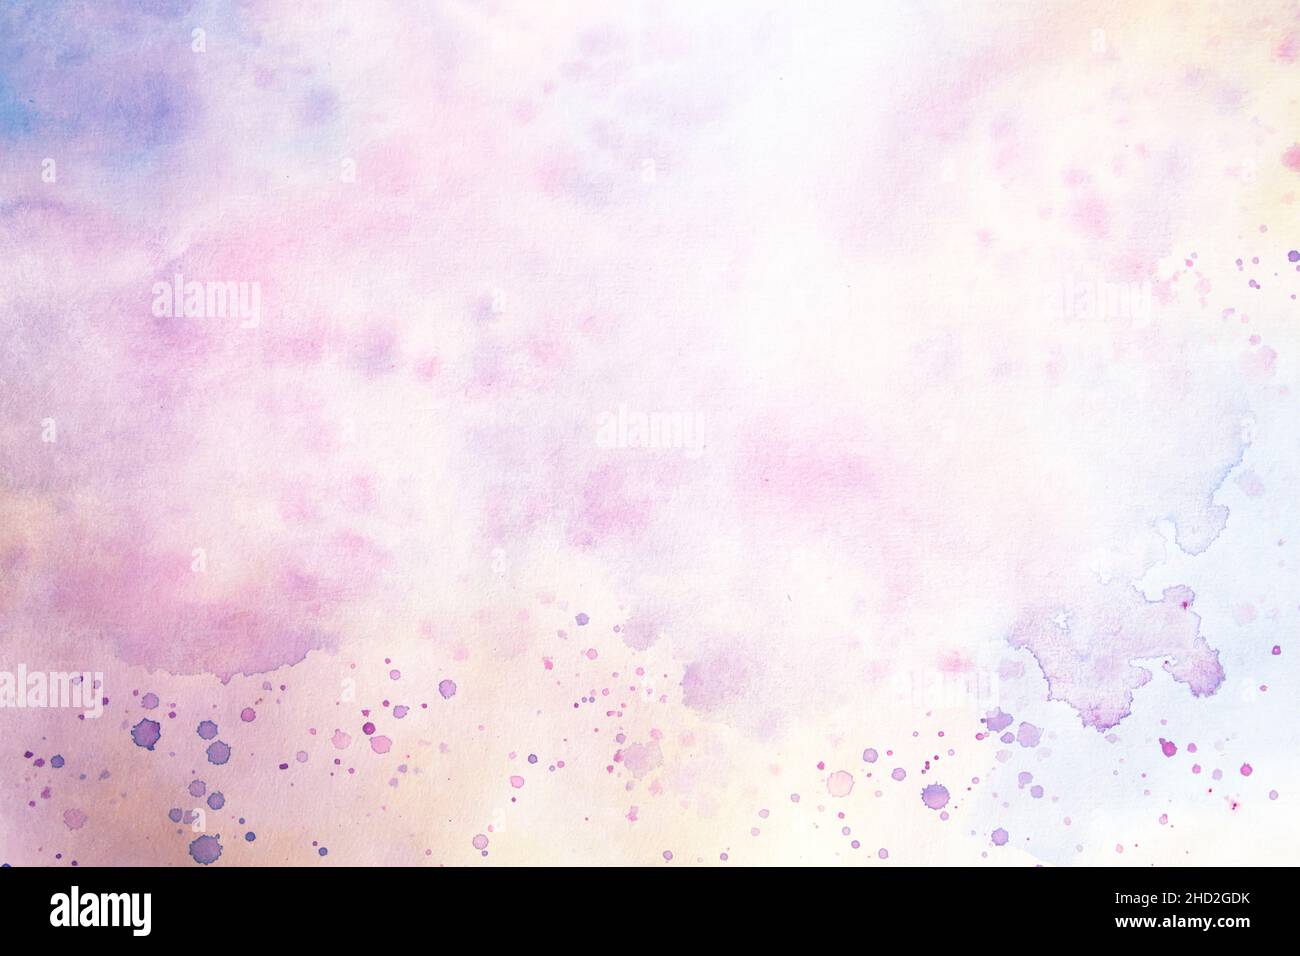 Rosa viola colorato blurry acquerello astratto backgrund Foto Stock